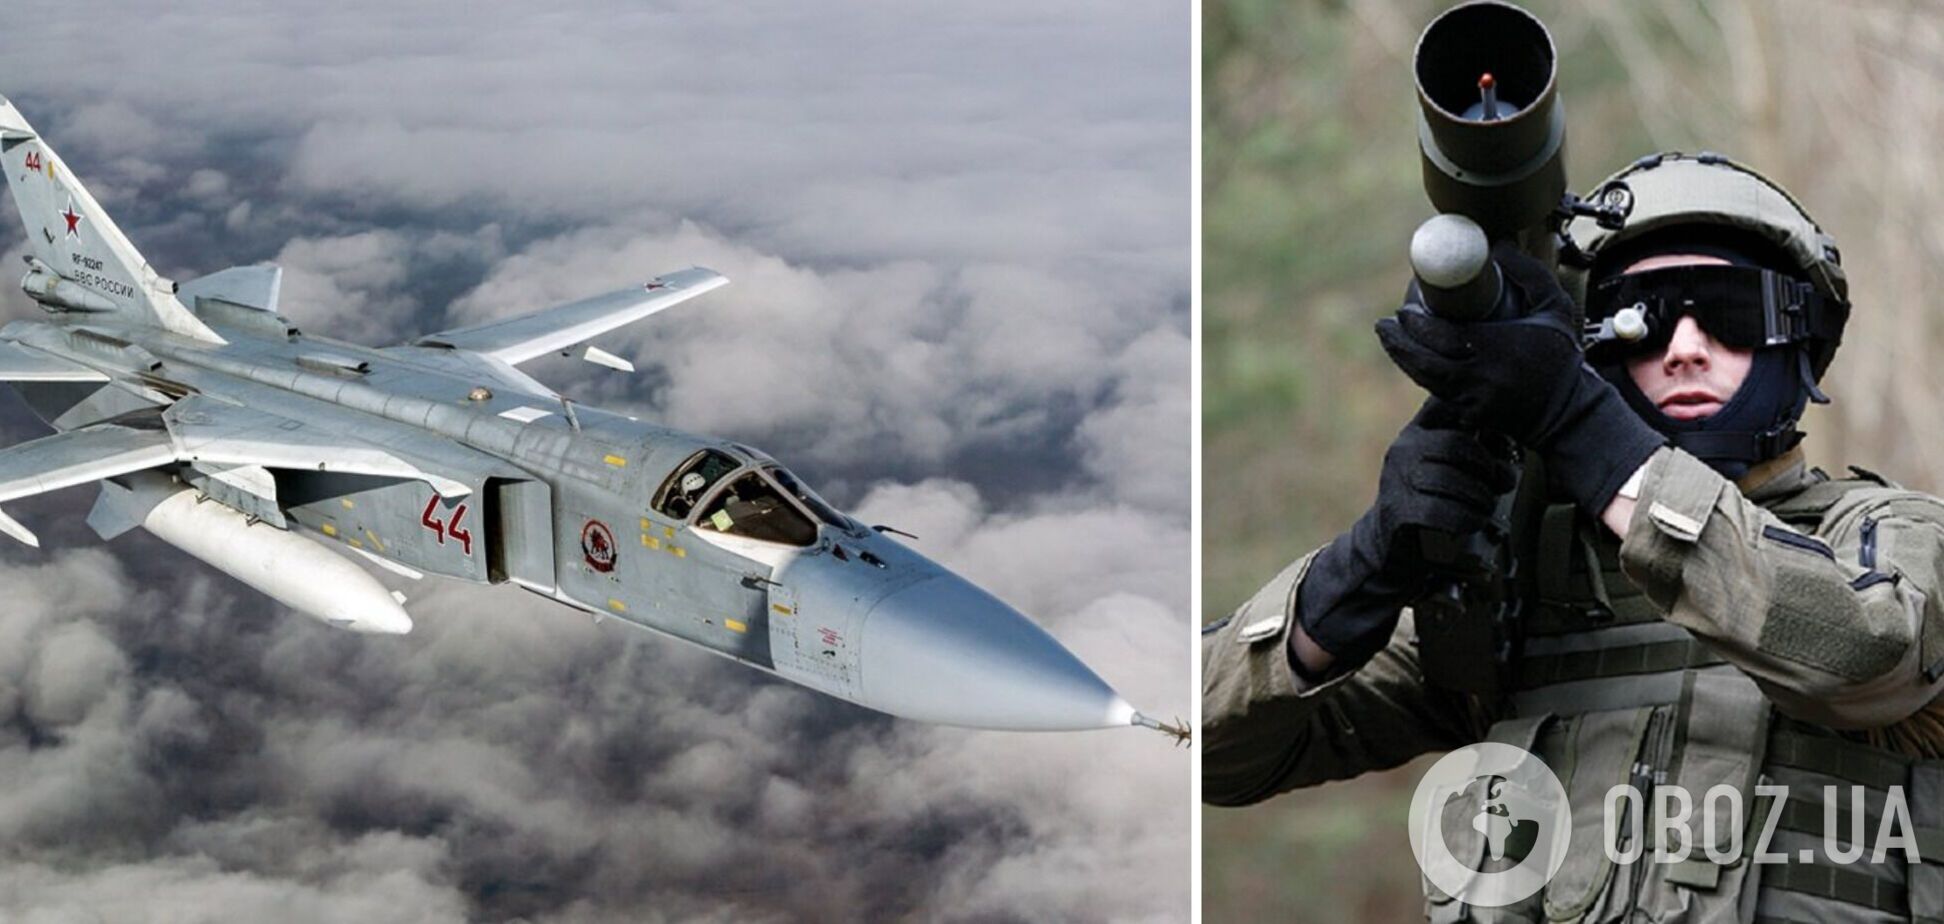 'Охота' удалась: эксклюзивное видео сбития вражеского Су-24 под Бахмутом